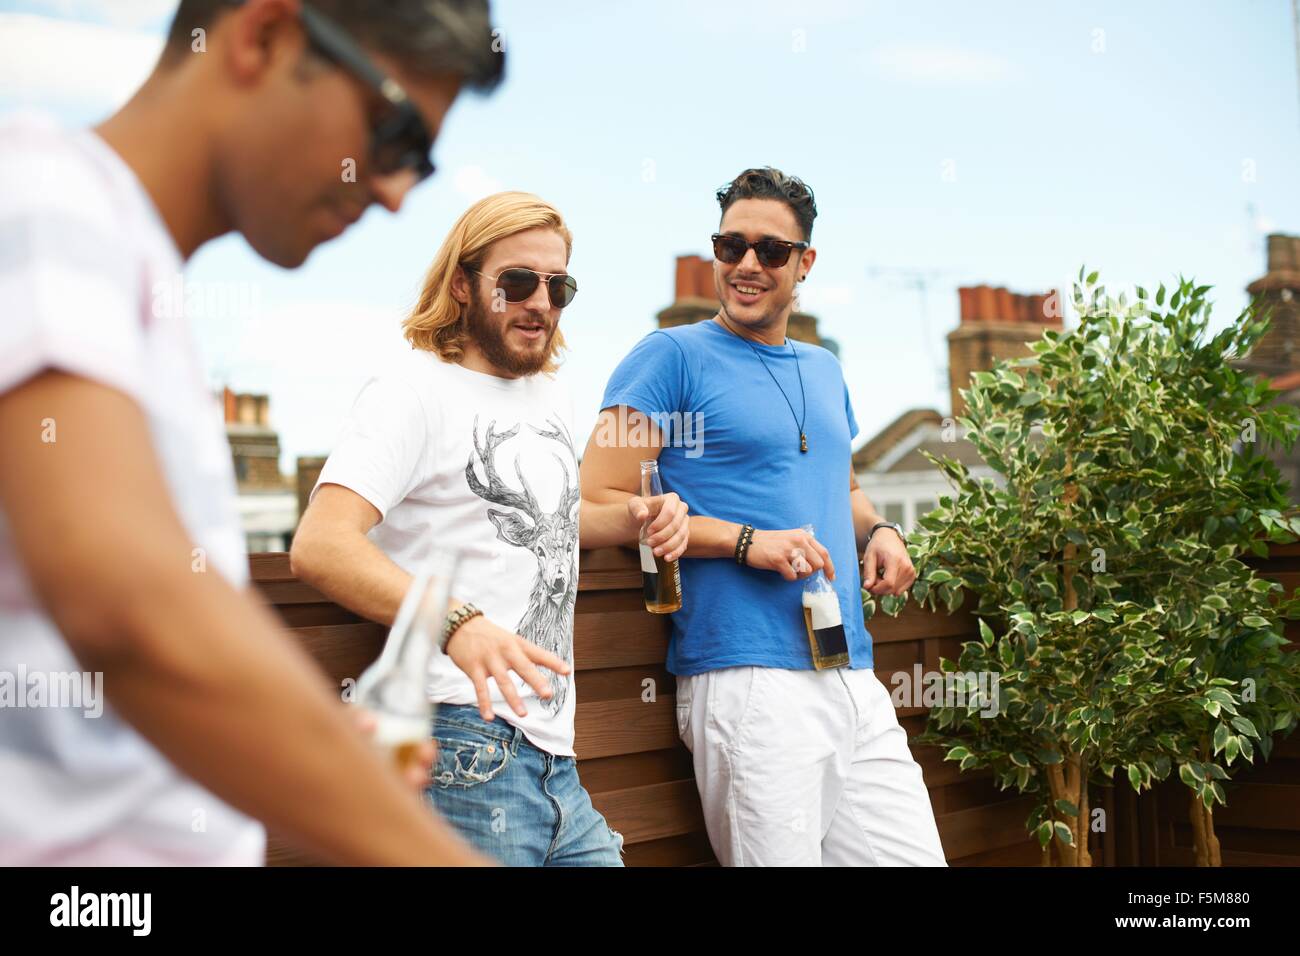 Drei männliche Freunde trinken Bier am Grill auf dem Dach Stockfoto